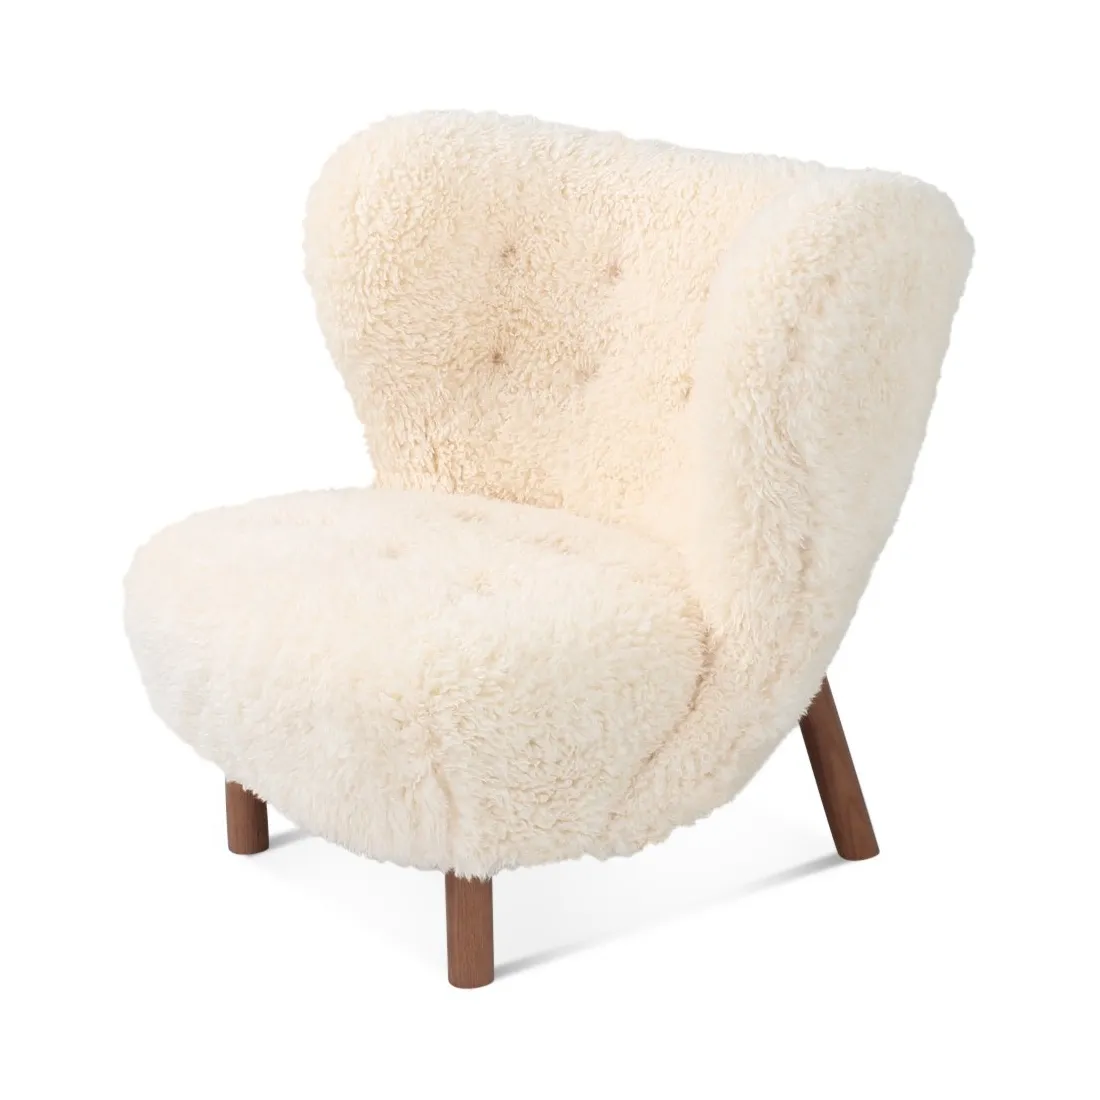 현대적인 세련된 양 피부 악센트 의자 나무 다리 모피 안락 의자 또는 호텔 거실 레저 가구